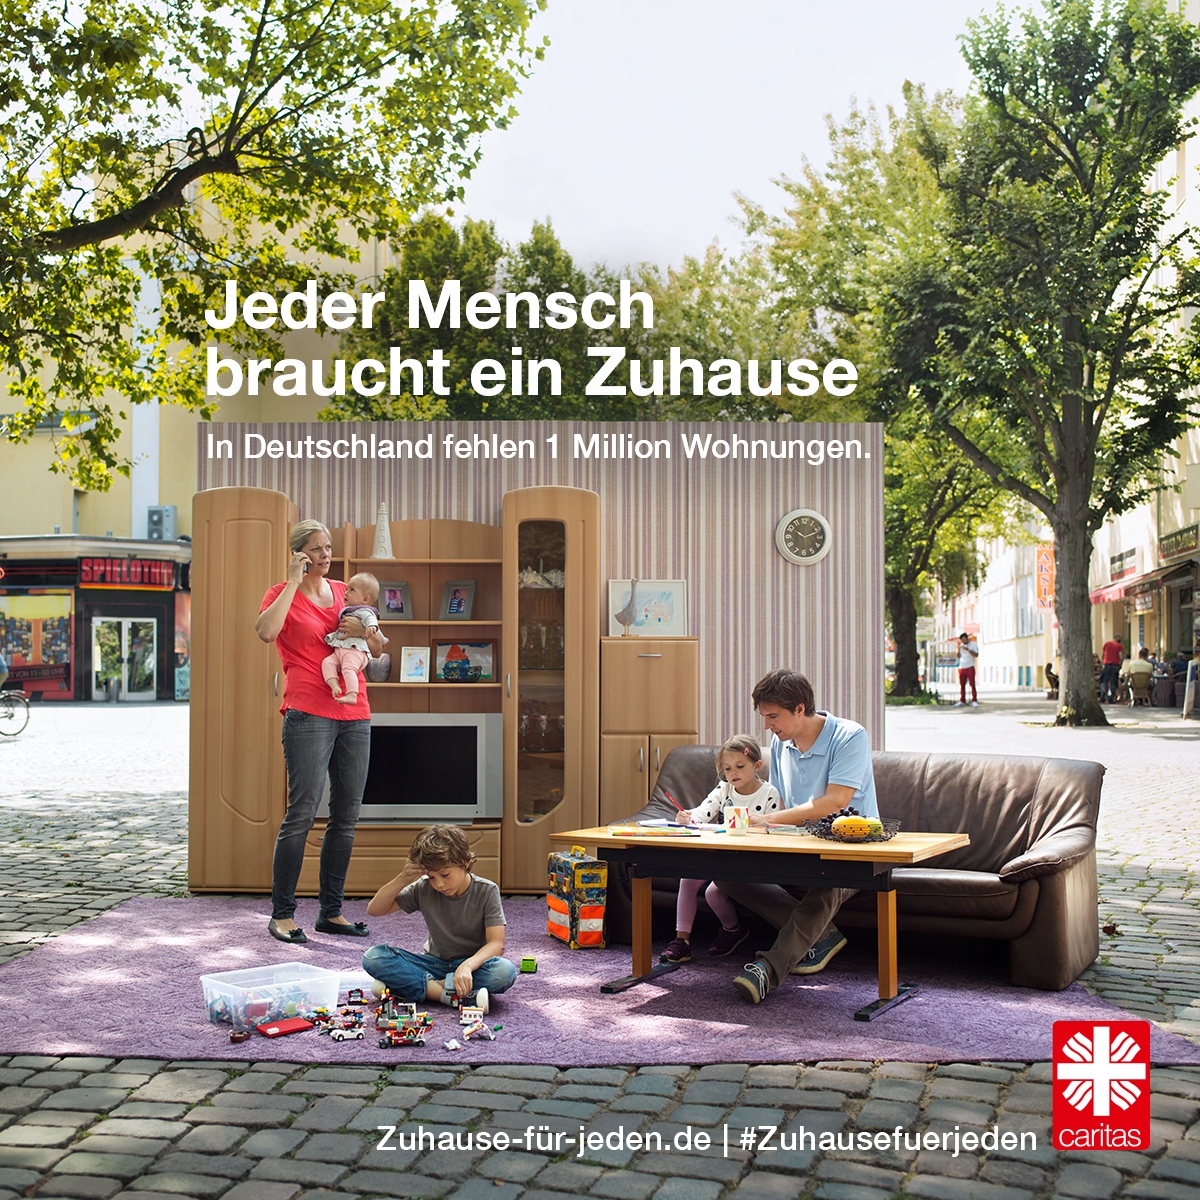 Familie mit Wohnzimmer auf Straße (Deutscher Caritasverband, Fotograf: Darius Ramazani)